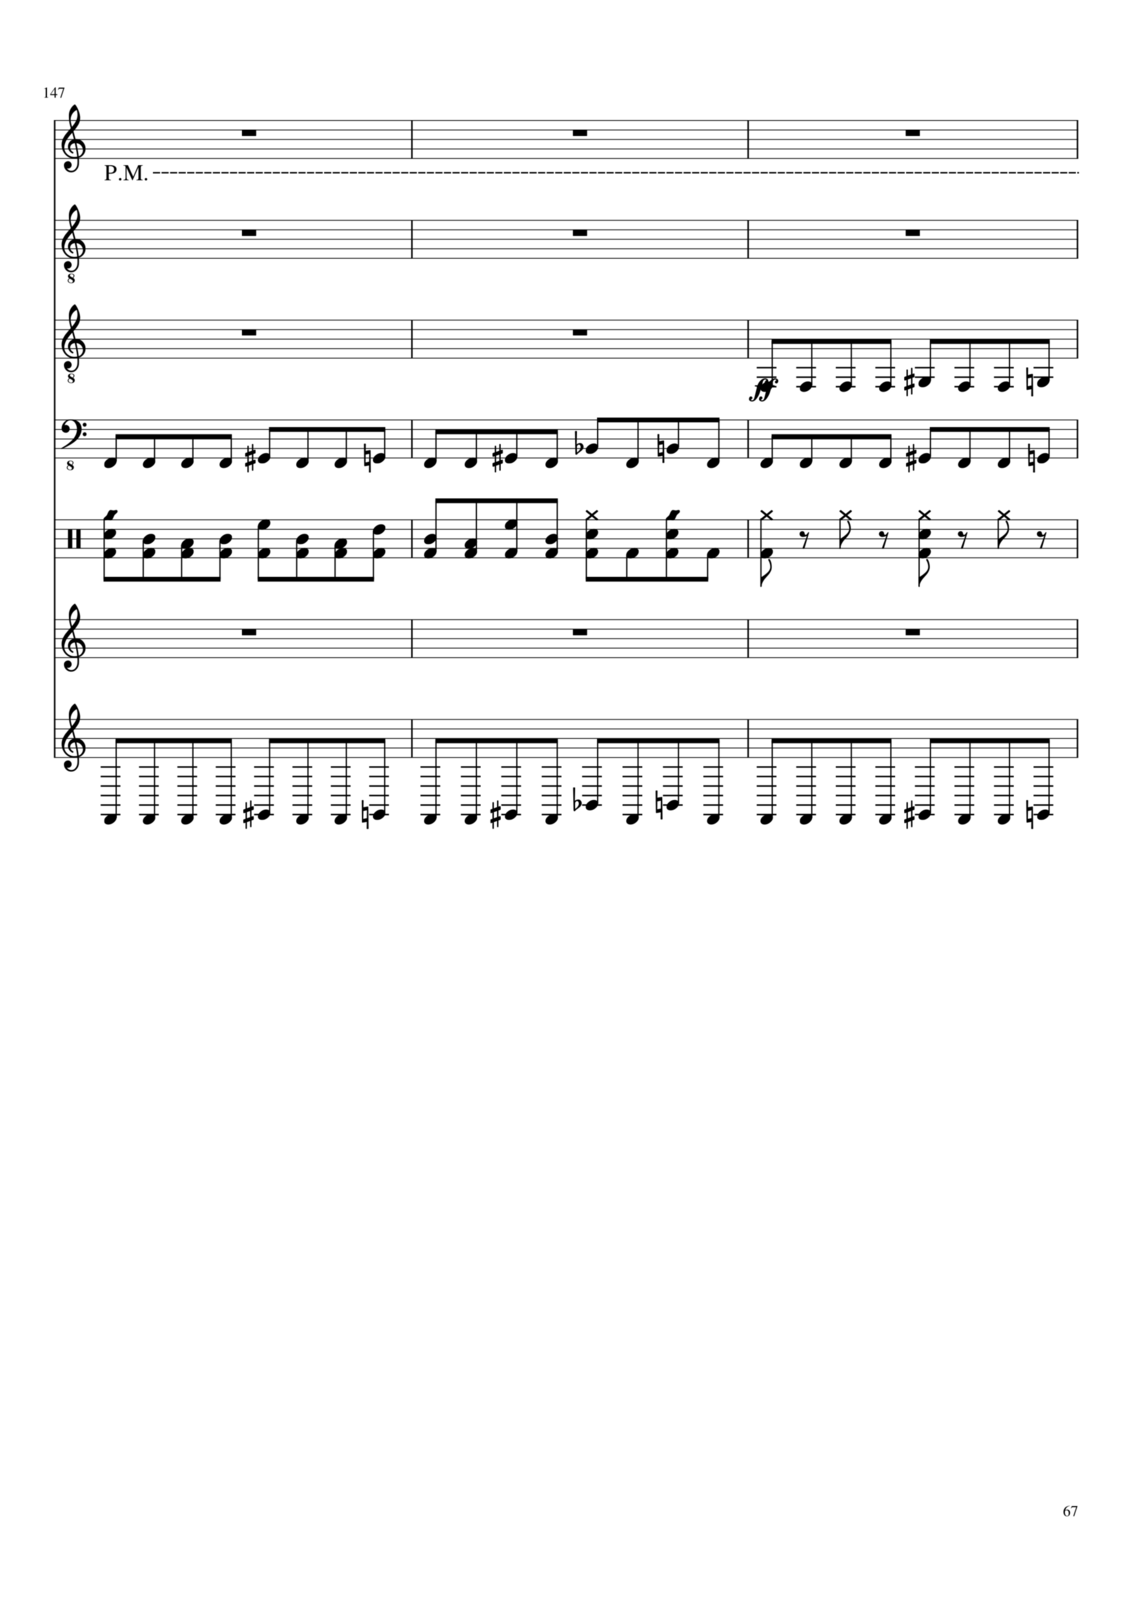 Vechnaya prizrachnaya vstrechnaya slide, Image 14